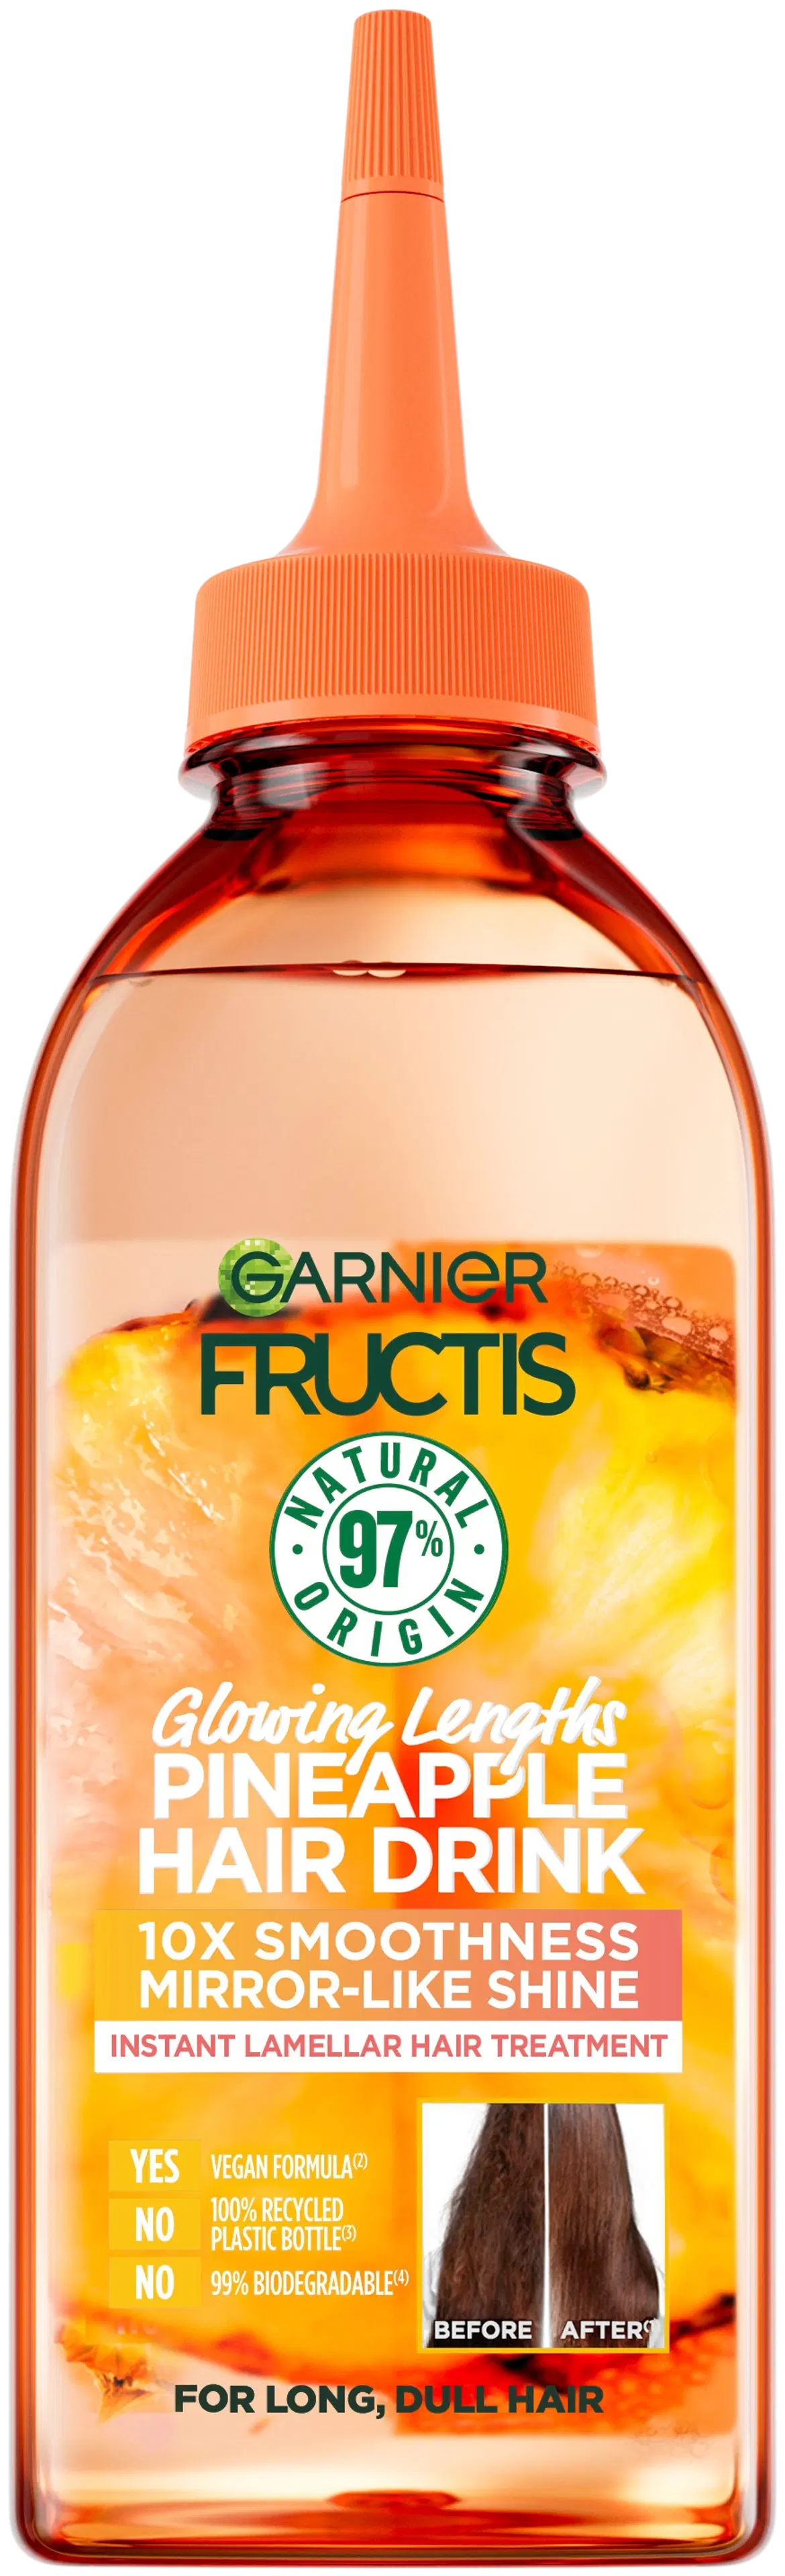 Garnier Fructis Hair Drink Pineapple Lamellar-hoitoaine kiillottomille hiuksille 200 ml